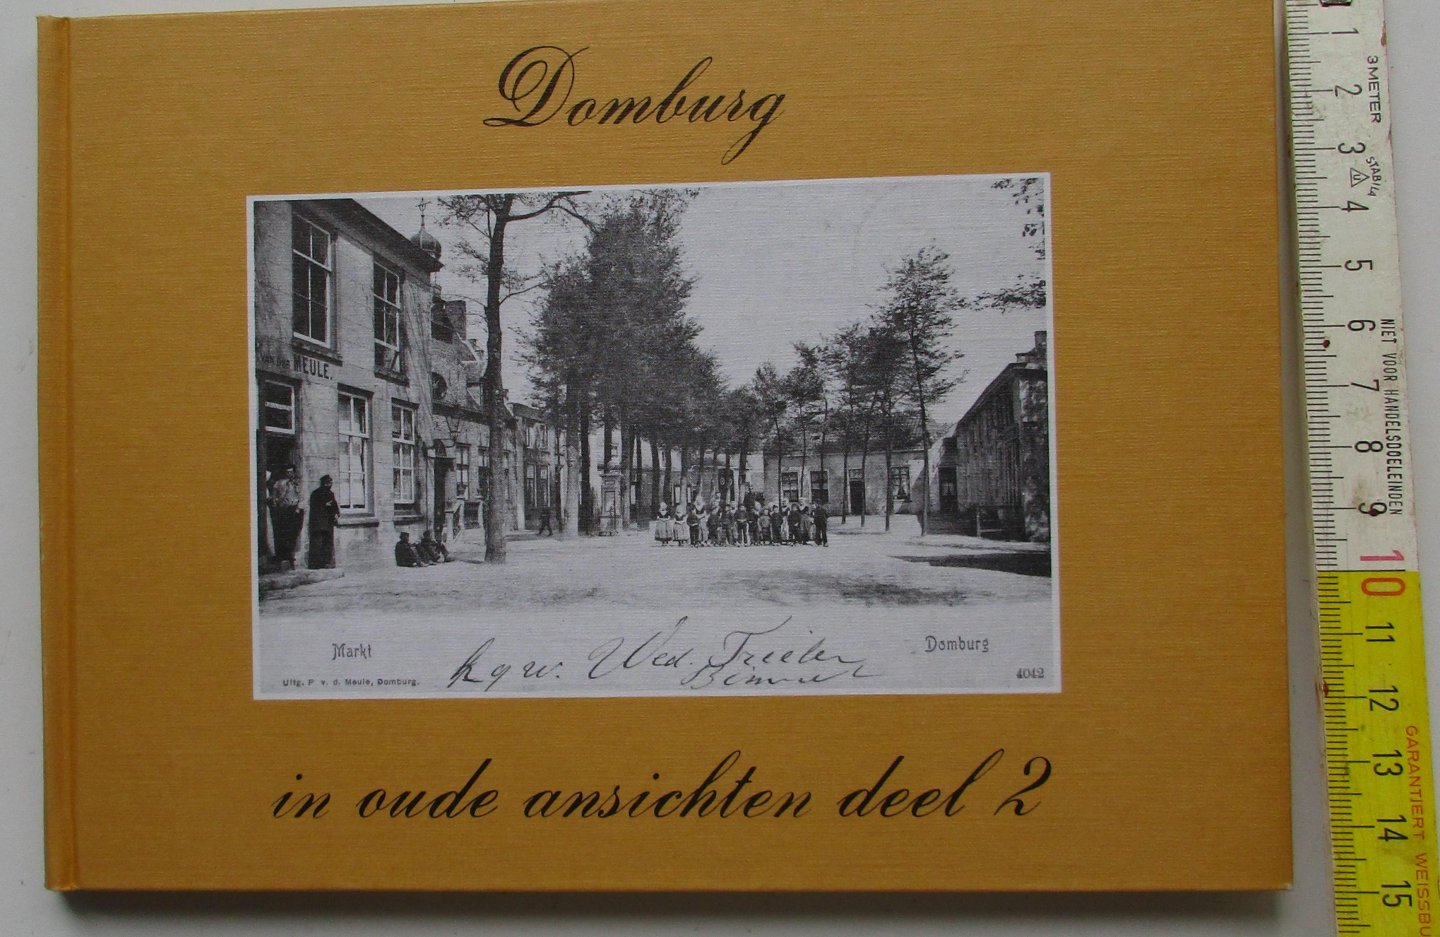 Winkelen van, Pagter de - Domburg in oude ansichten deel 2